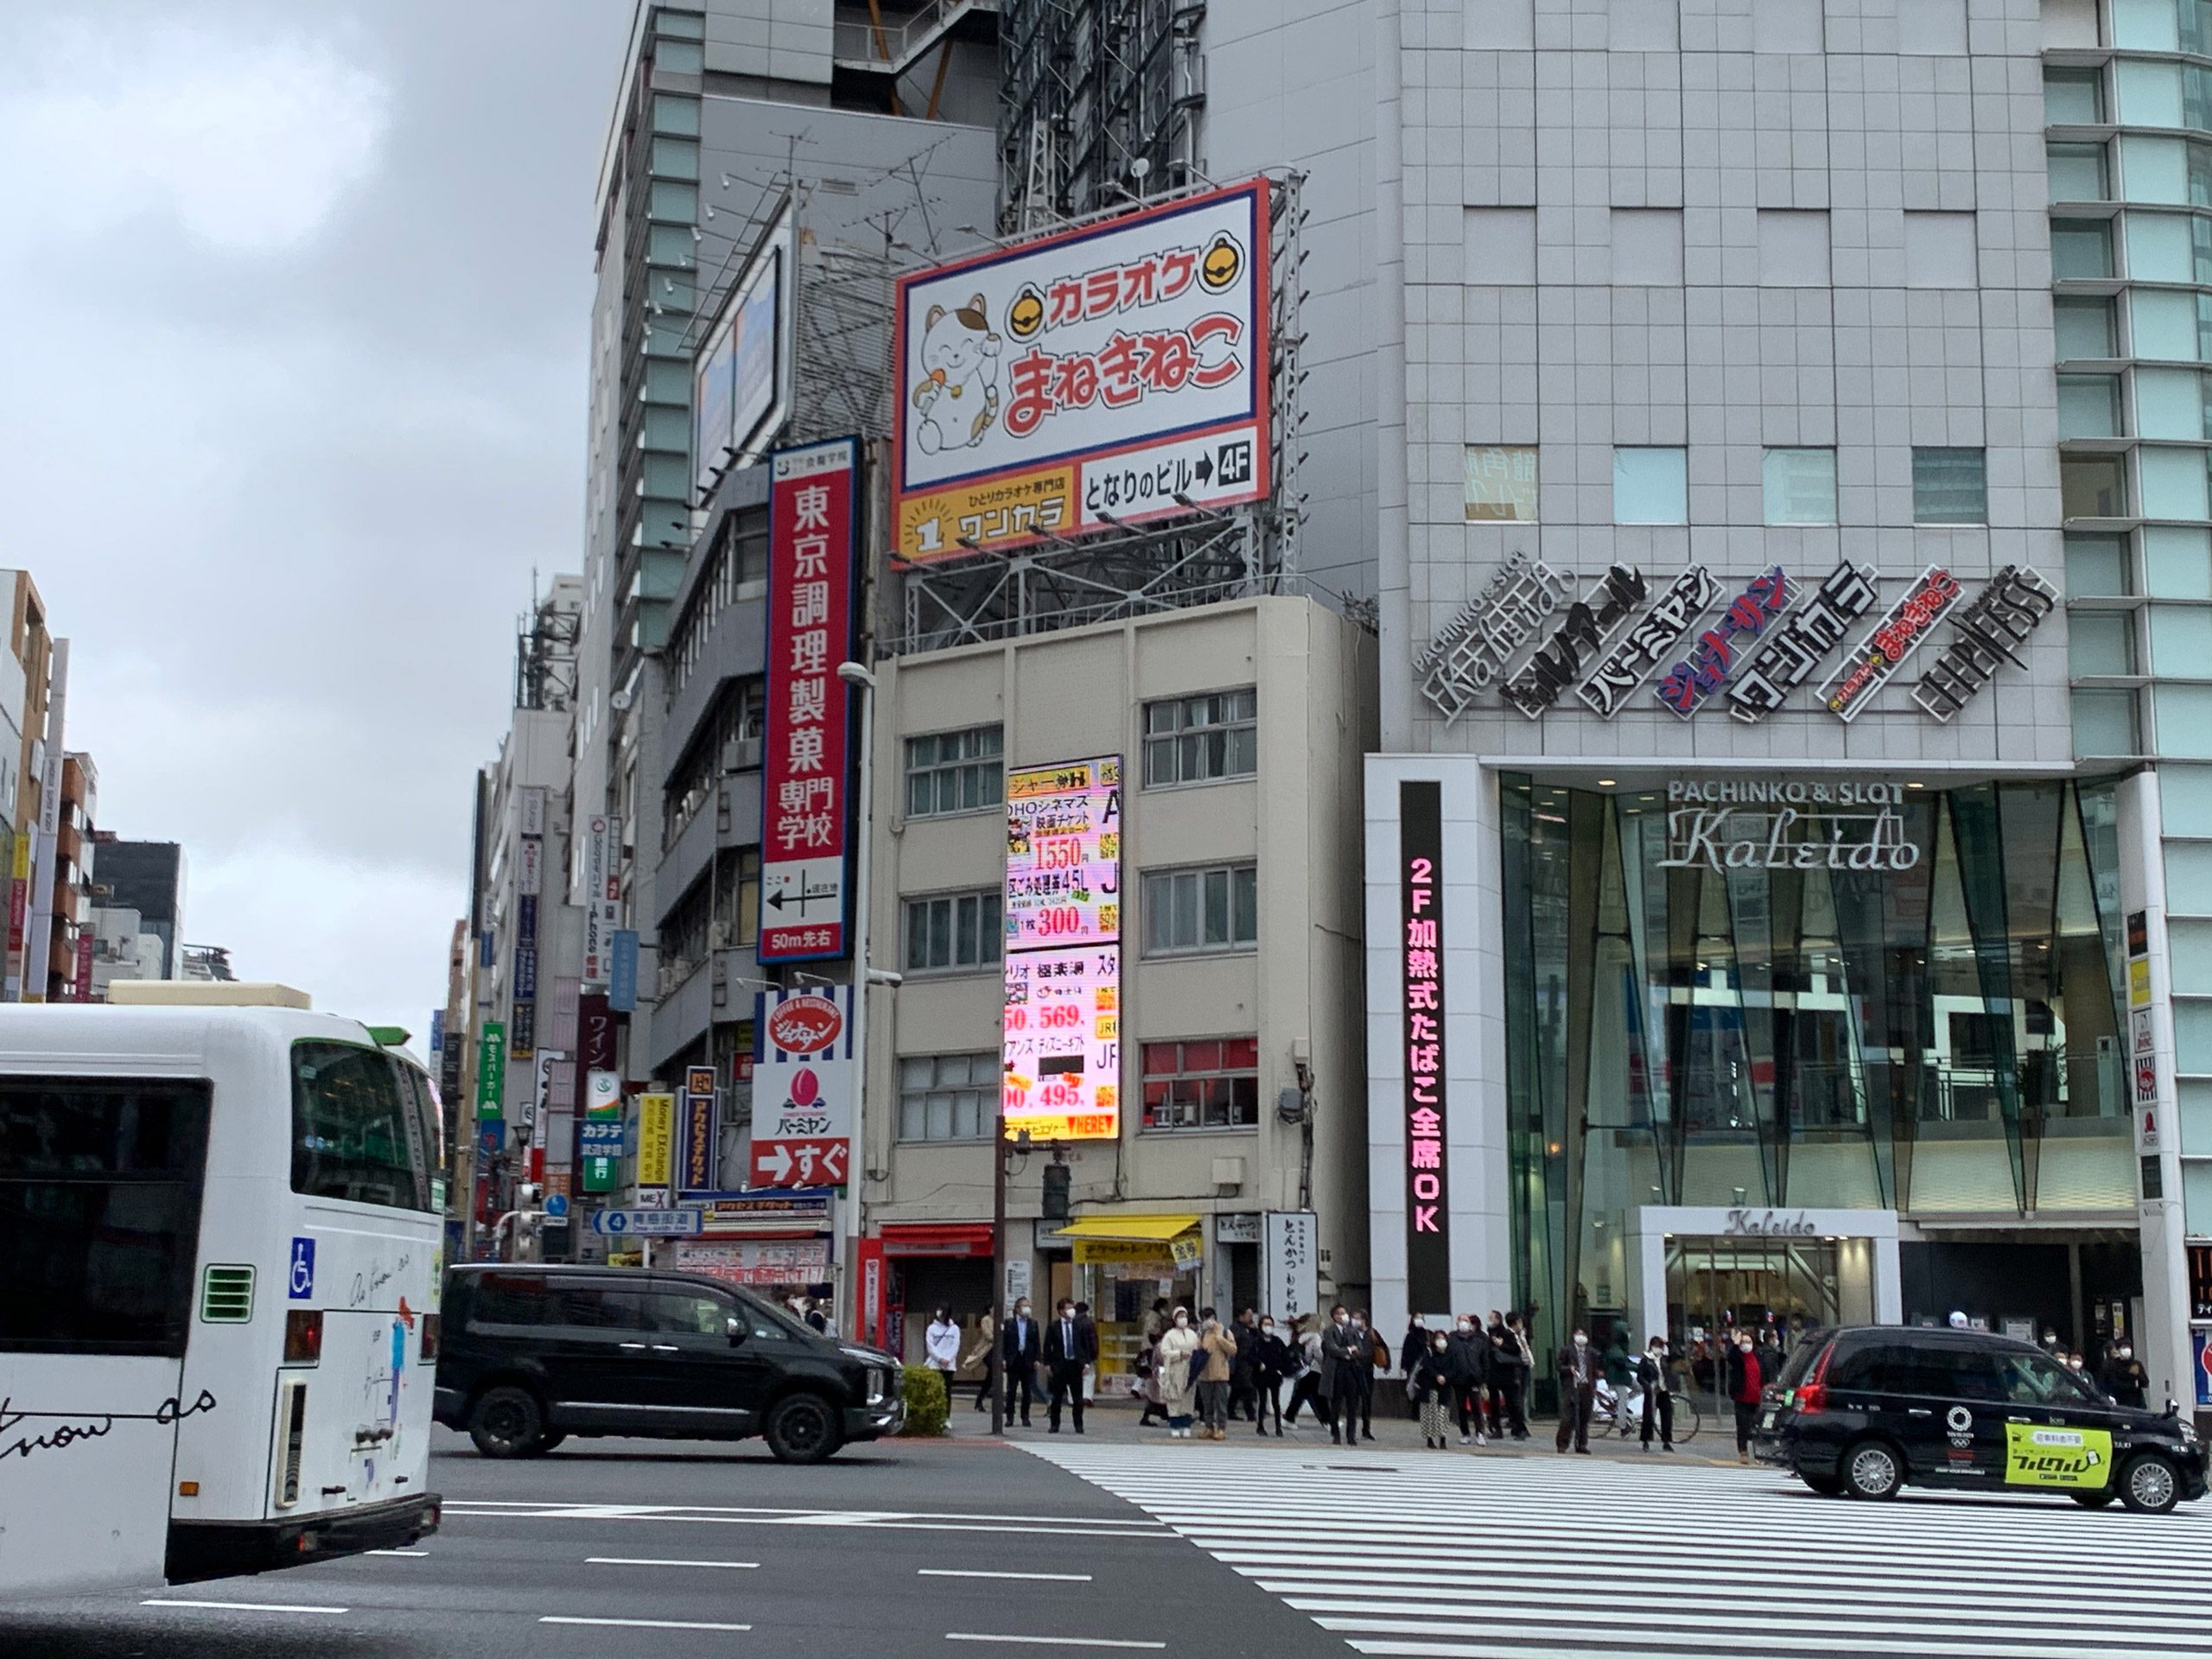 新宿駅西口 街頭ビジョンを見上げると 予想外すぎる表示に 仕事サボってる ニュースサイトしらべぇ